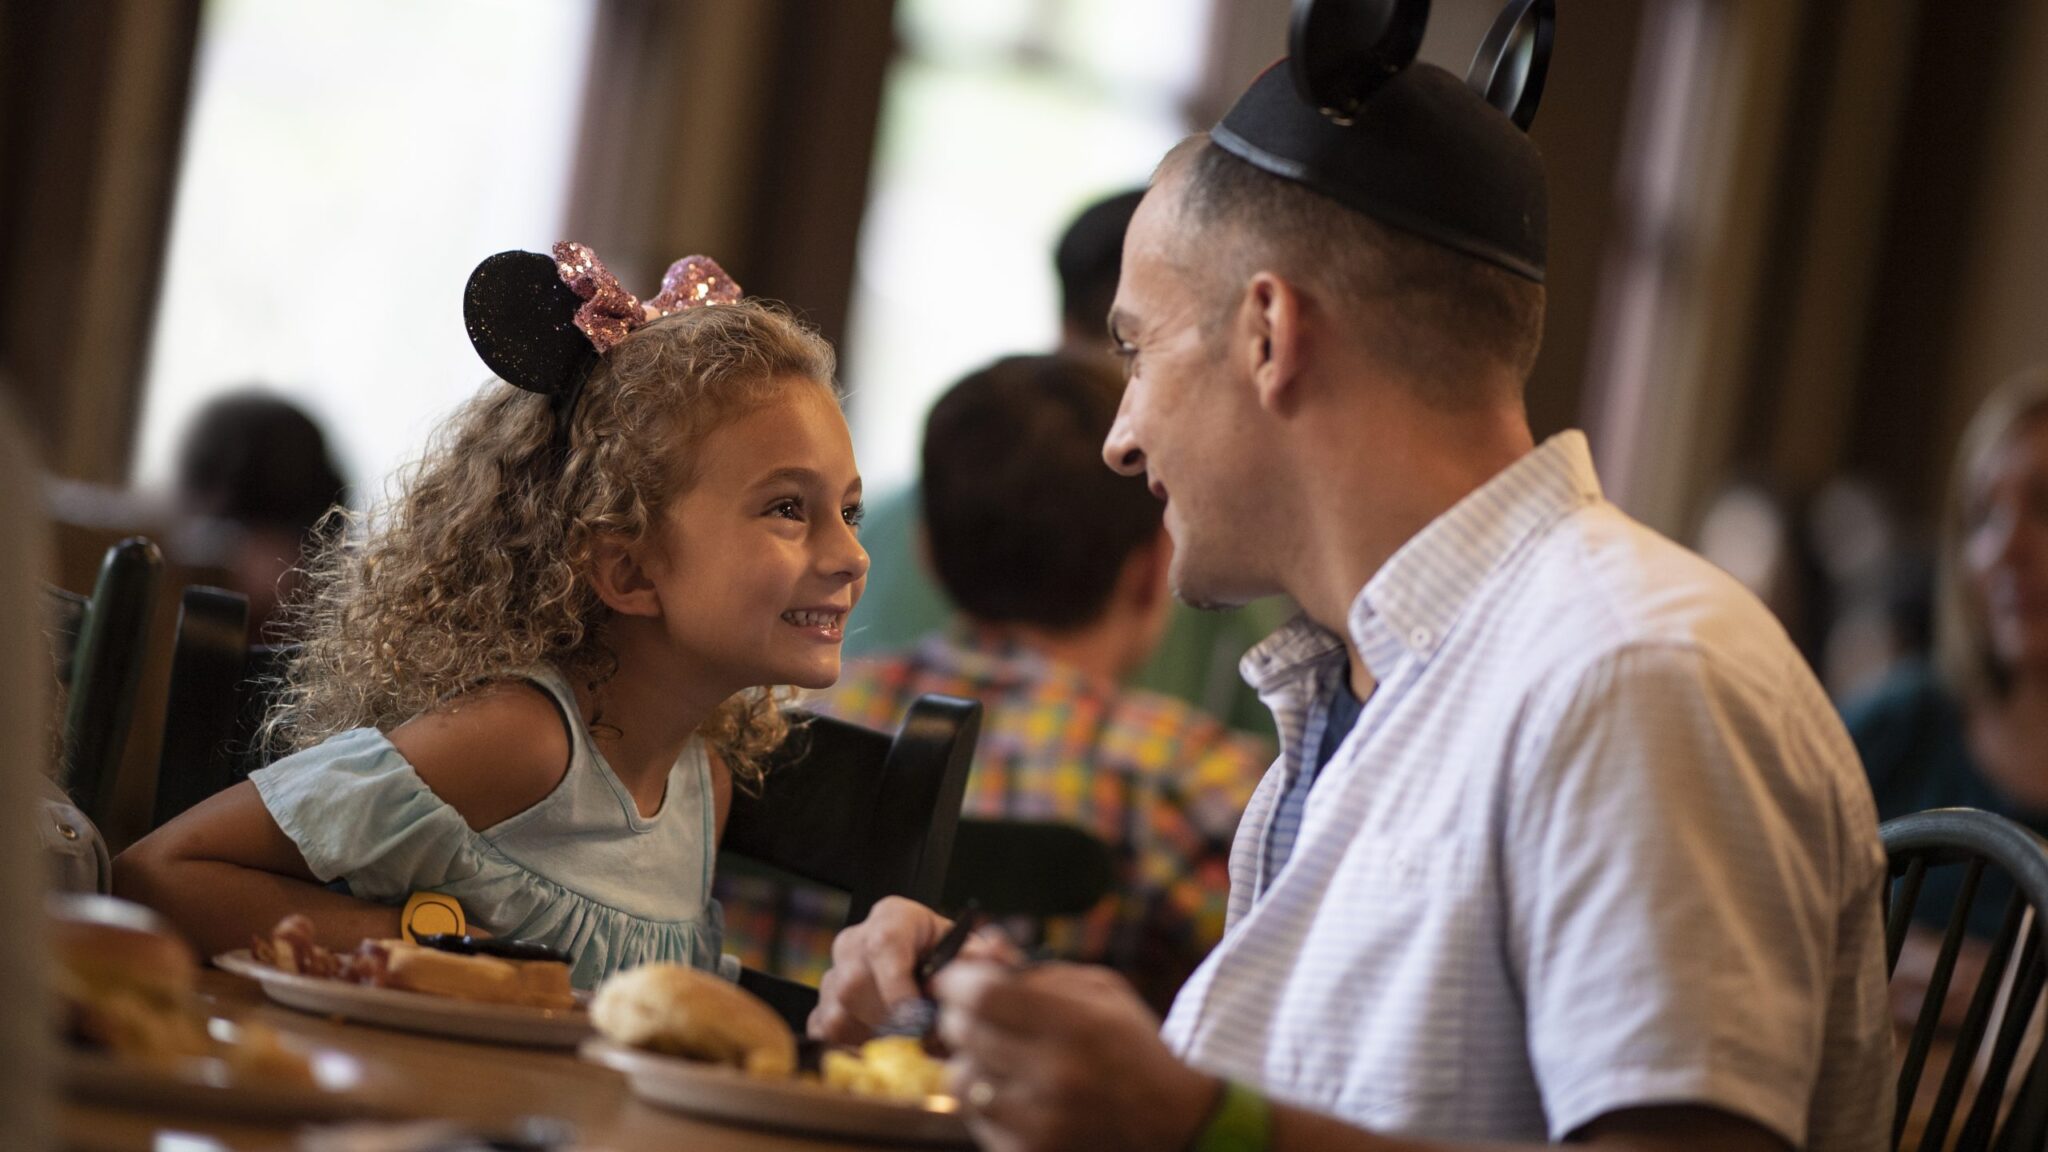 Disney free dining plan or kids